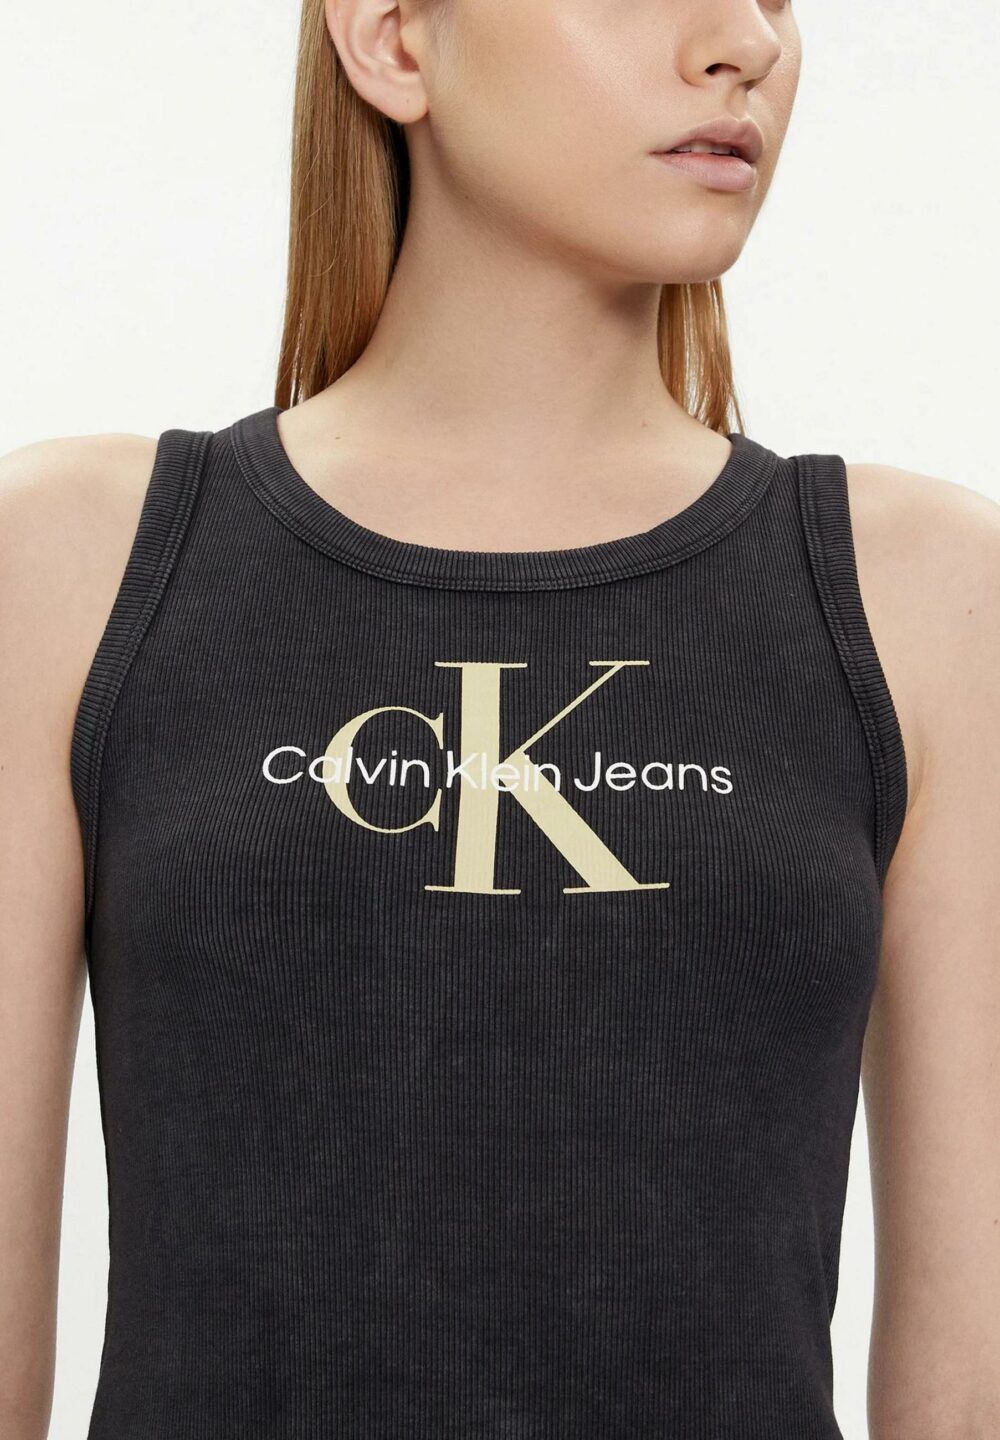 Vestito corto Calvin Klein Jeans ARCHIVAL MONOLOGO Nero - Foto 2